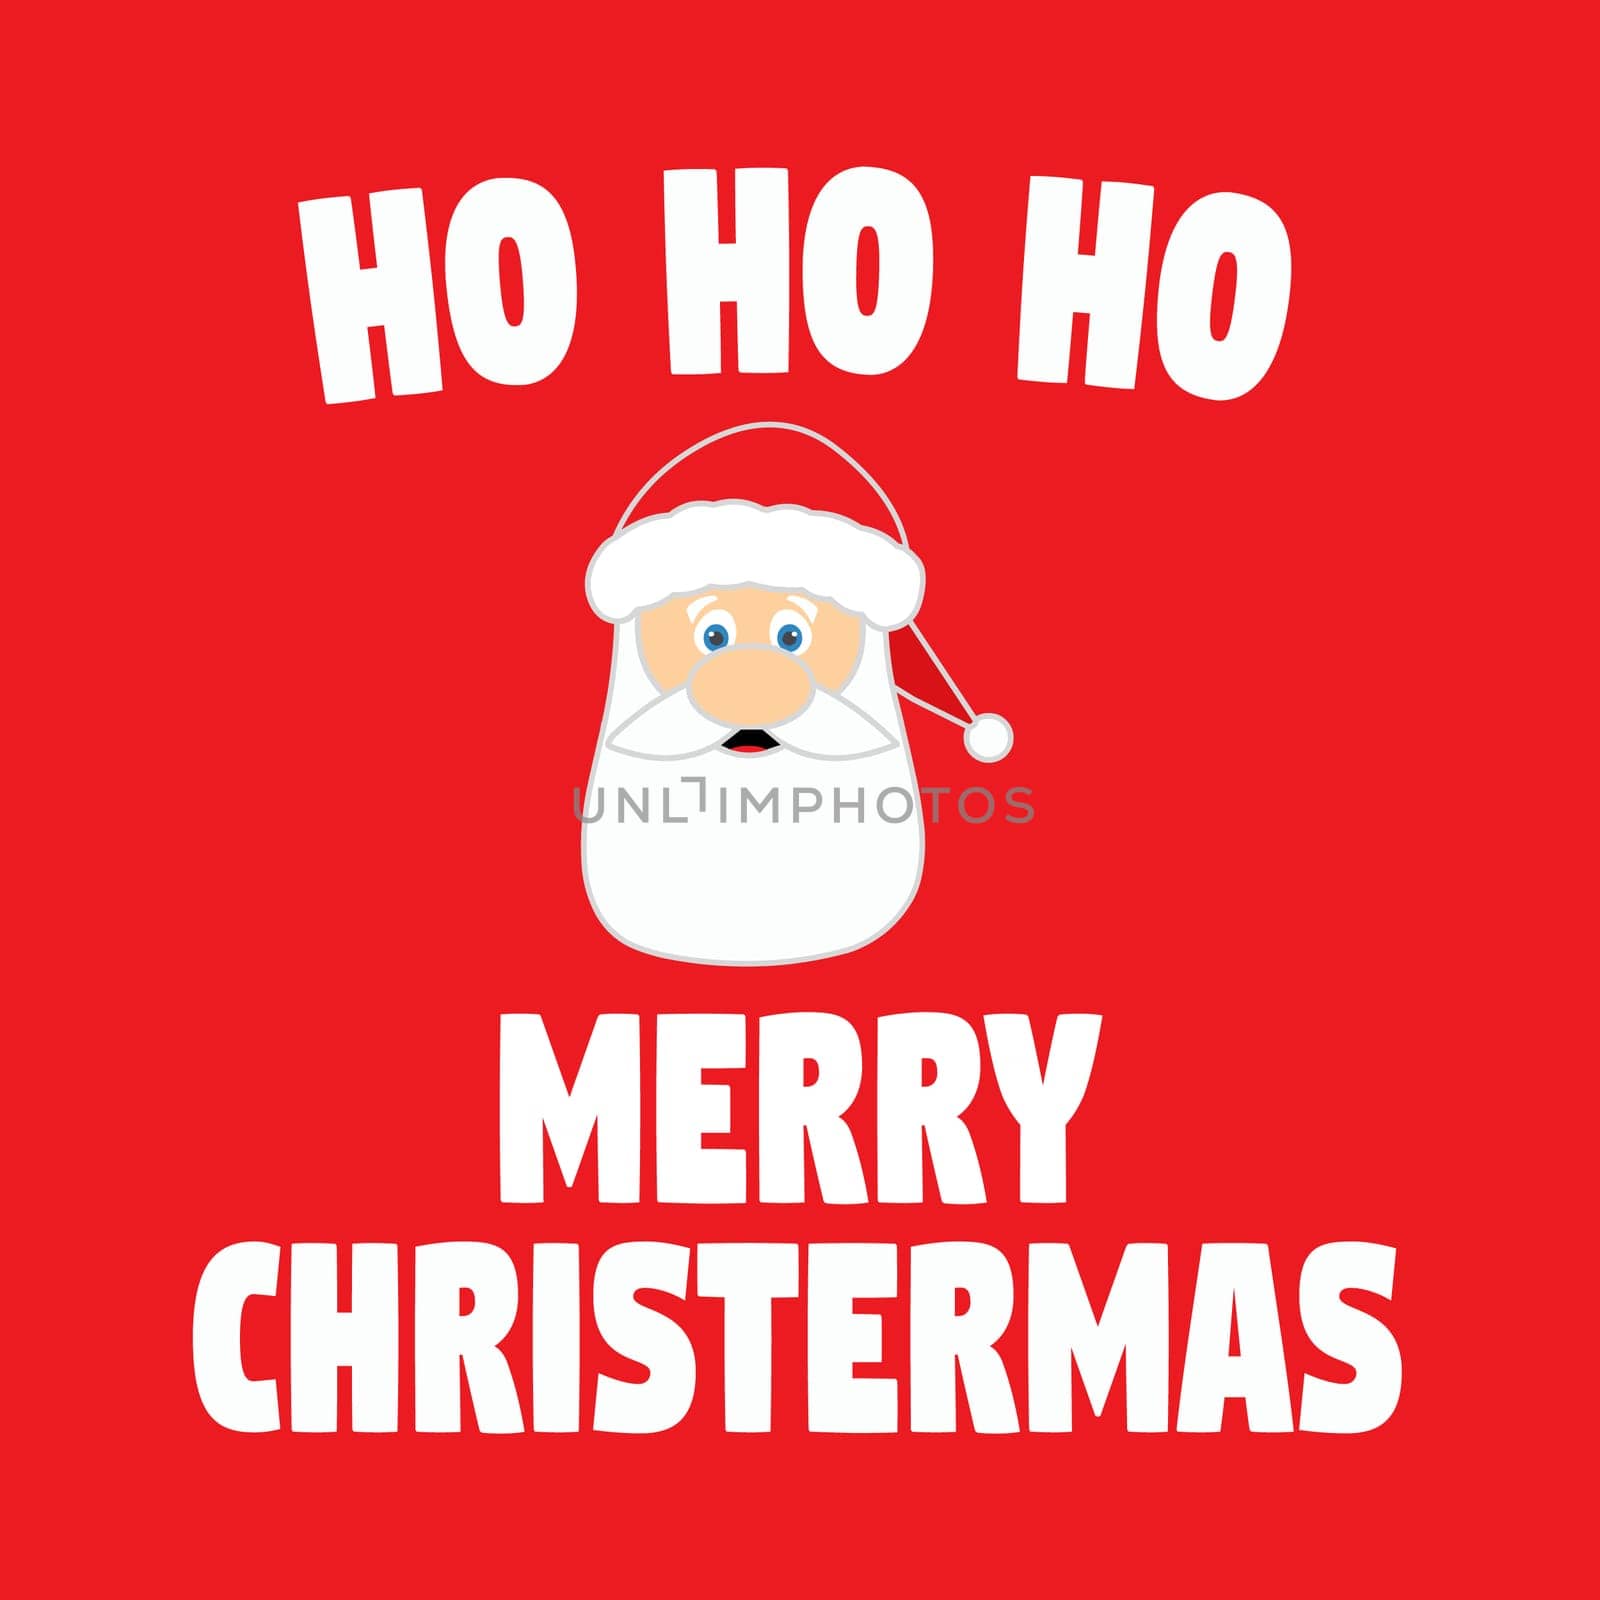 A santa's face with the text "ho ho ho Merry Christmas".